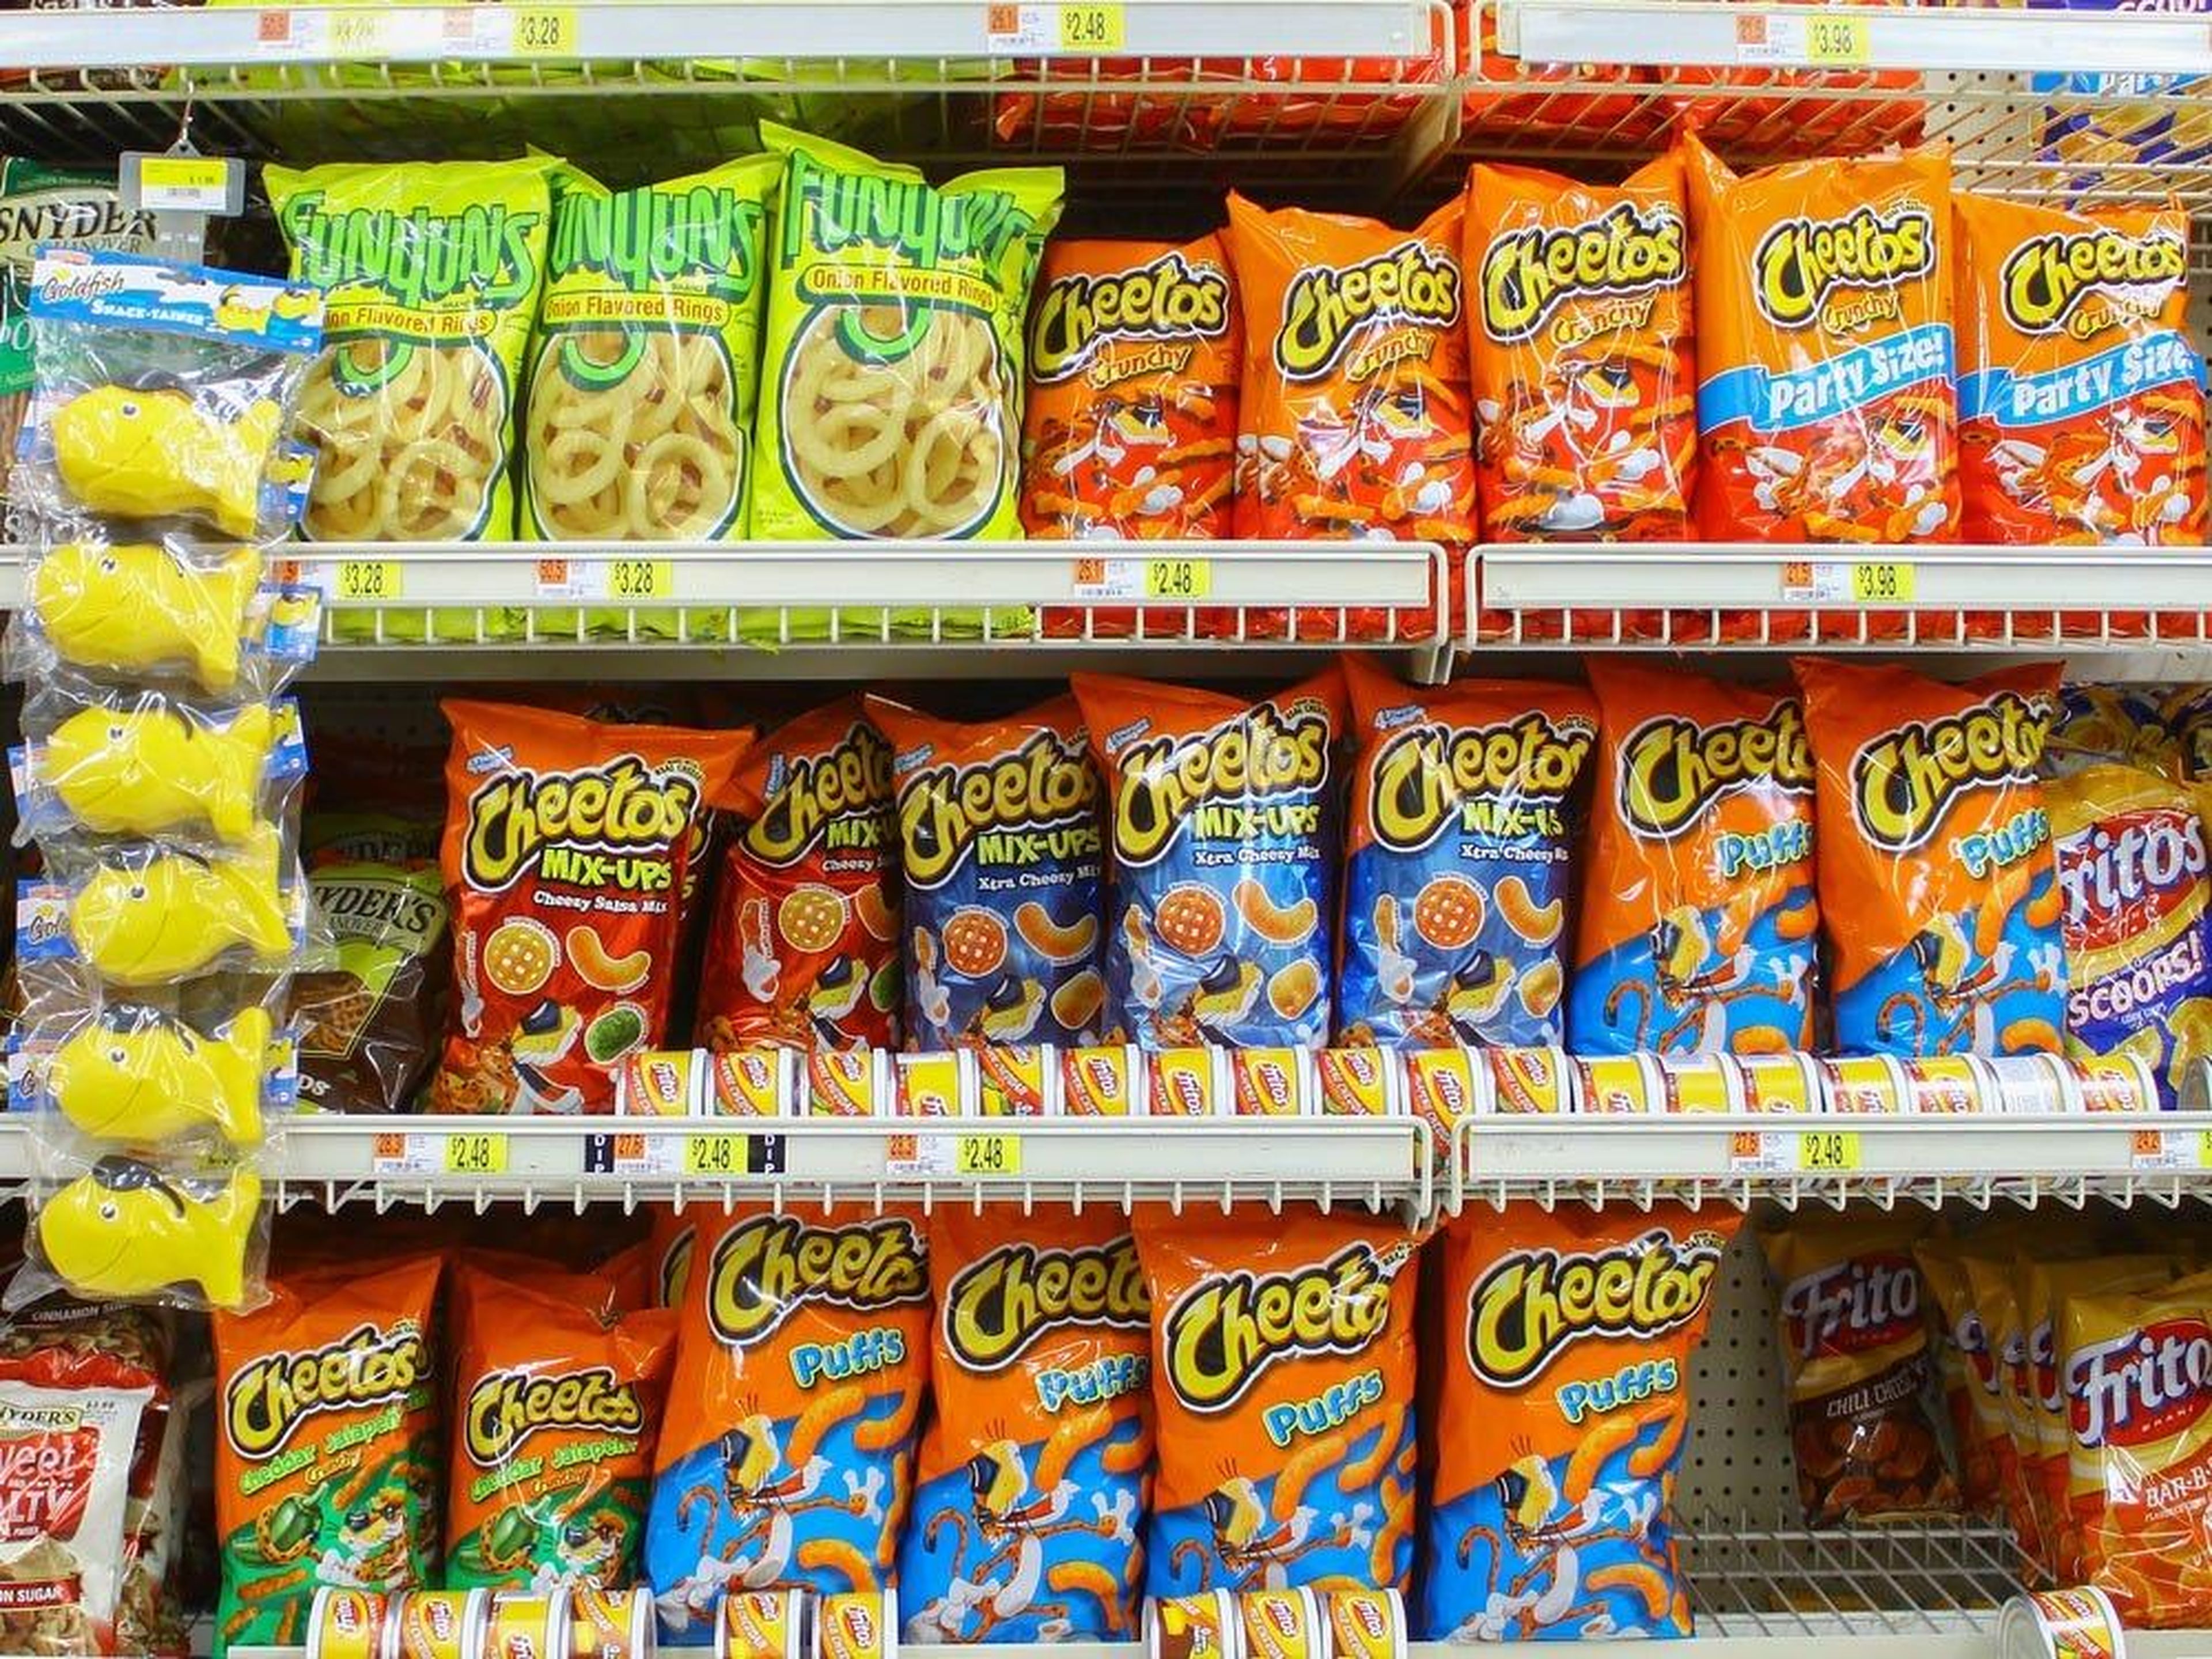 Bolsas de Cheetos en el estante de una tienda.